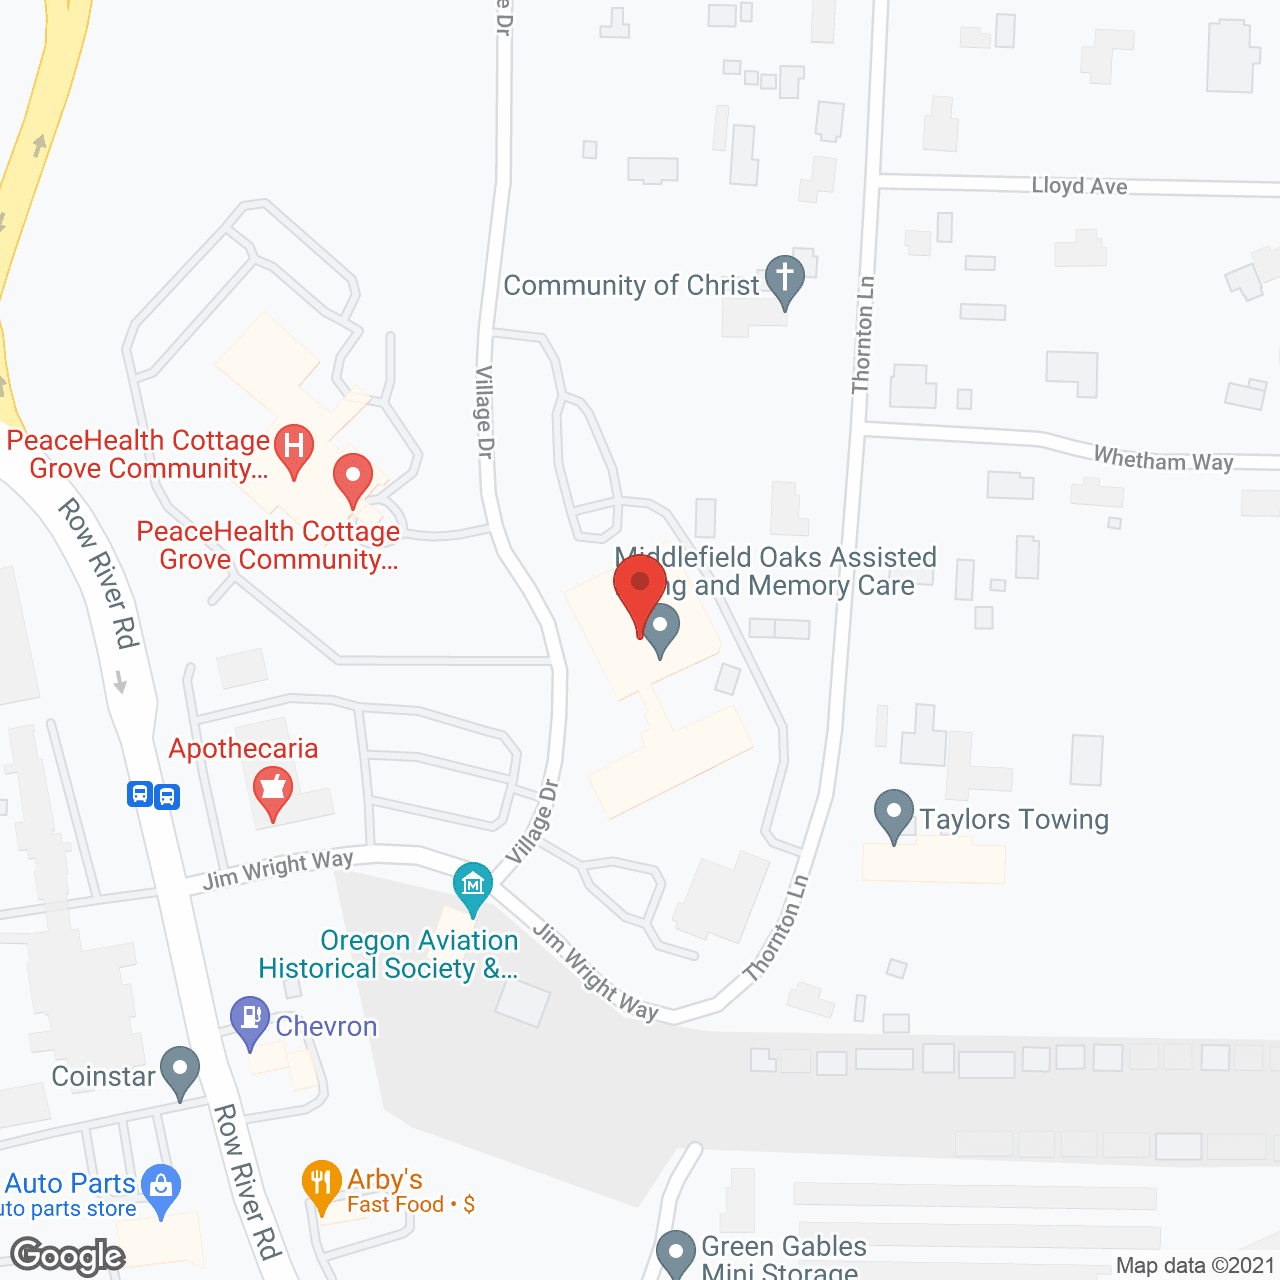 Middlefield Oaks in google map